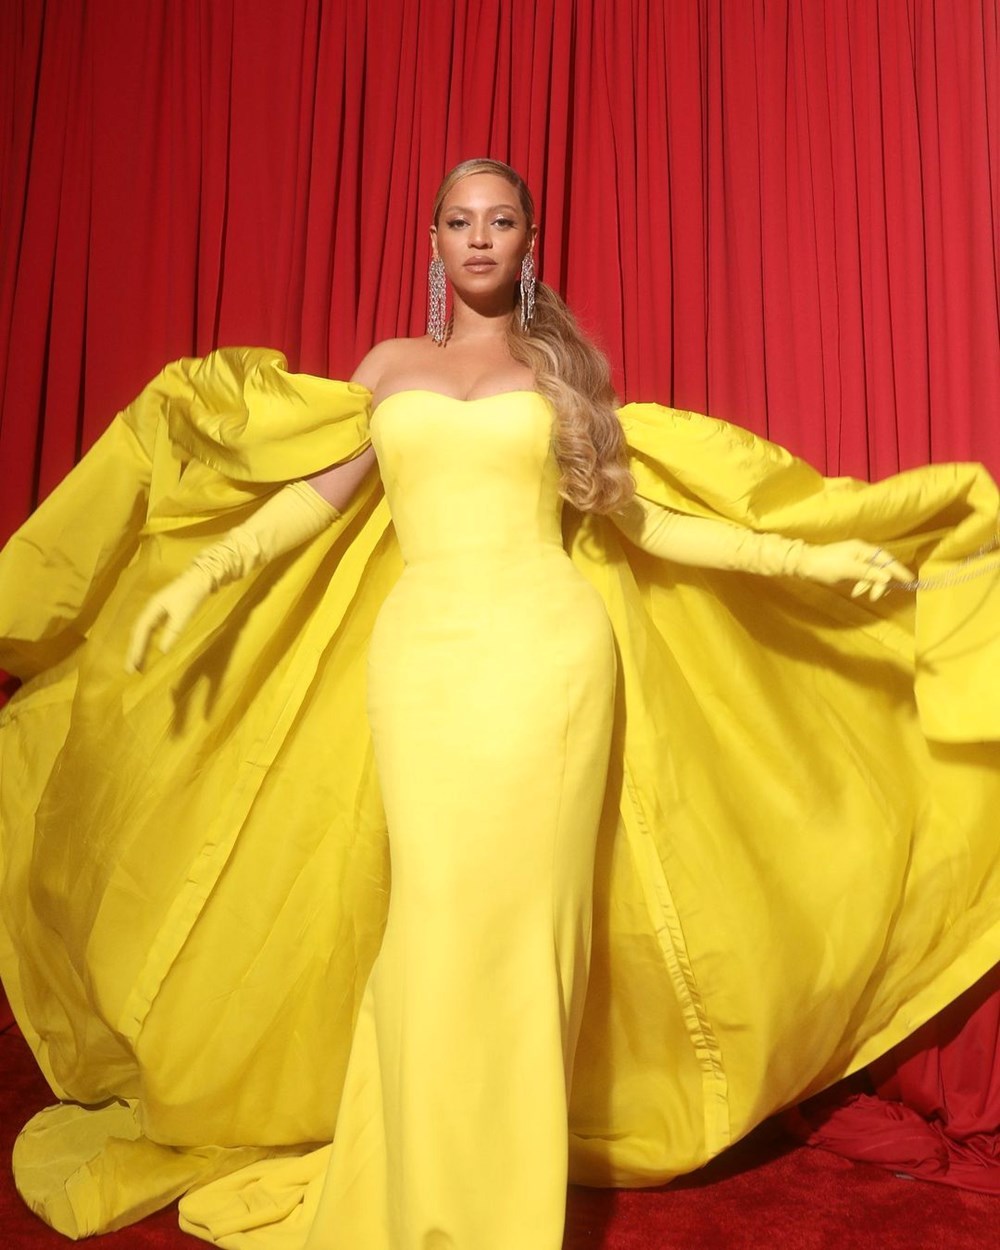 Dubai'deki otel açılışında Beyonce'ye bir saat için 24 milyon dolar ödendi - 3